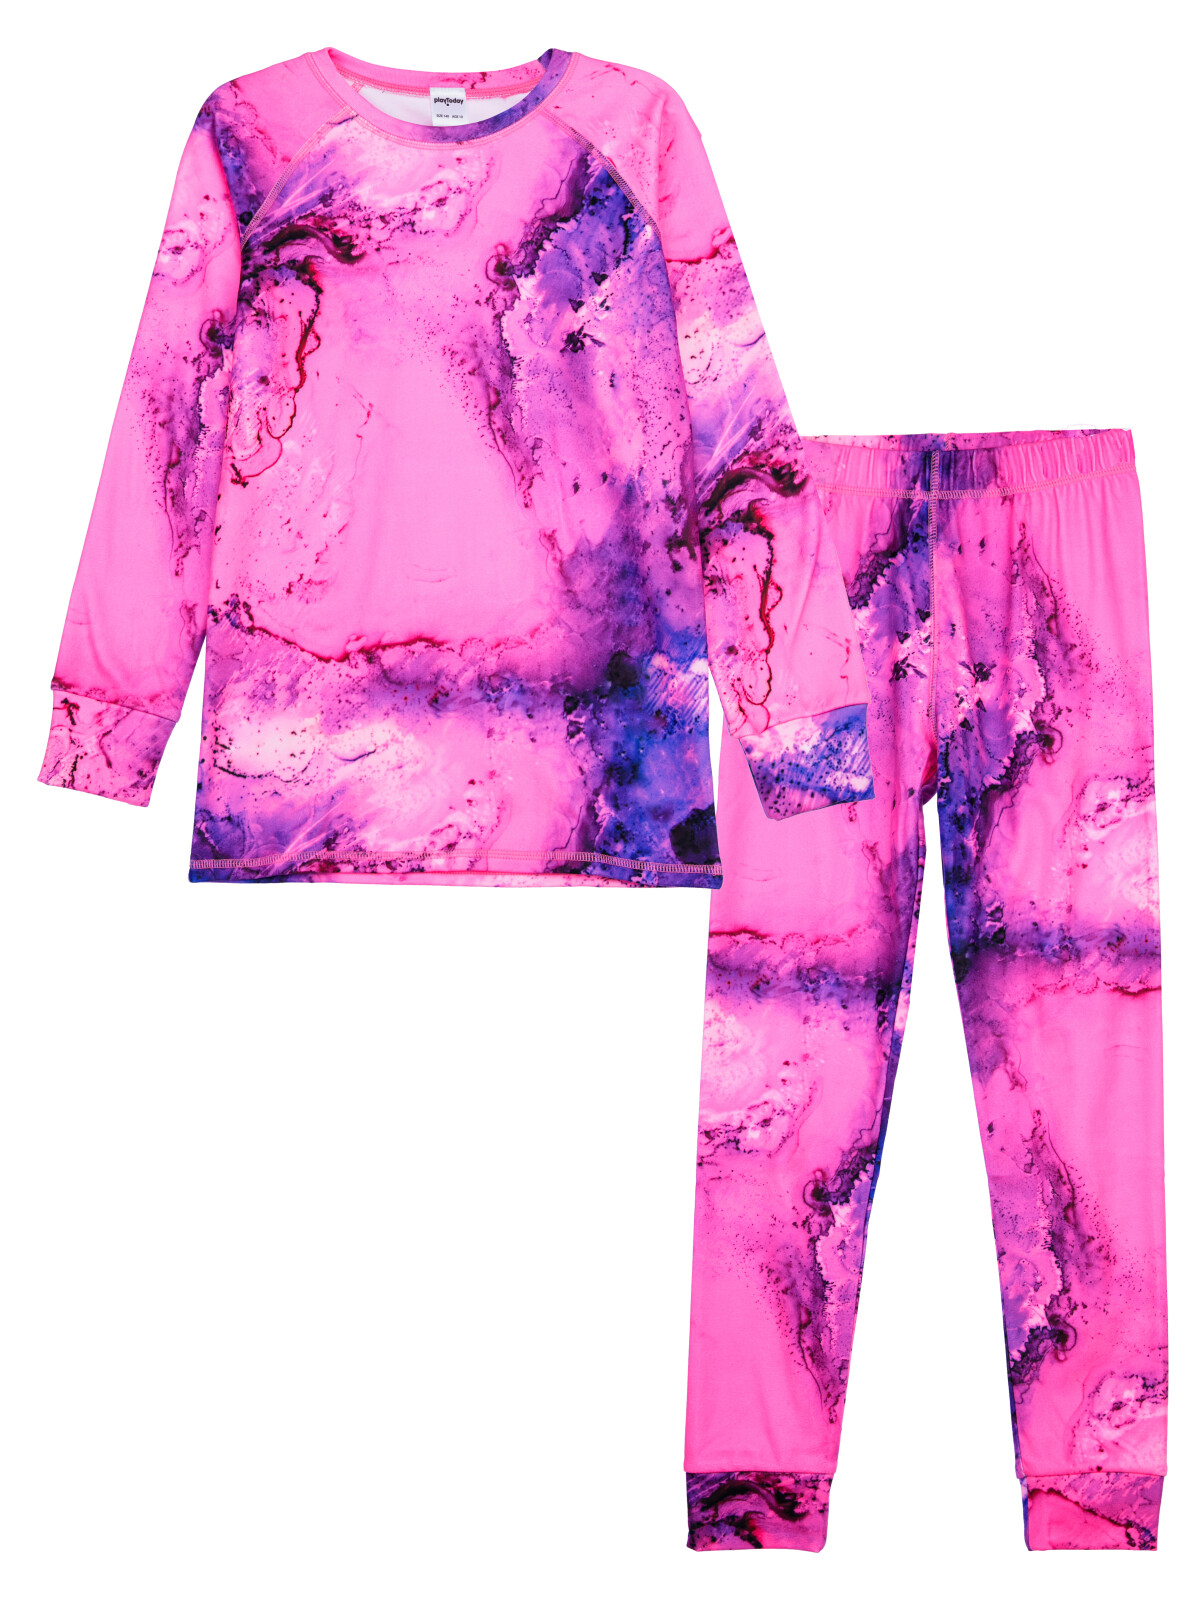 Термокомплект для девочек PlayToday: брюки, толстовка, цветной, 128